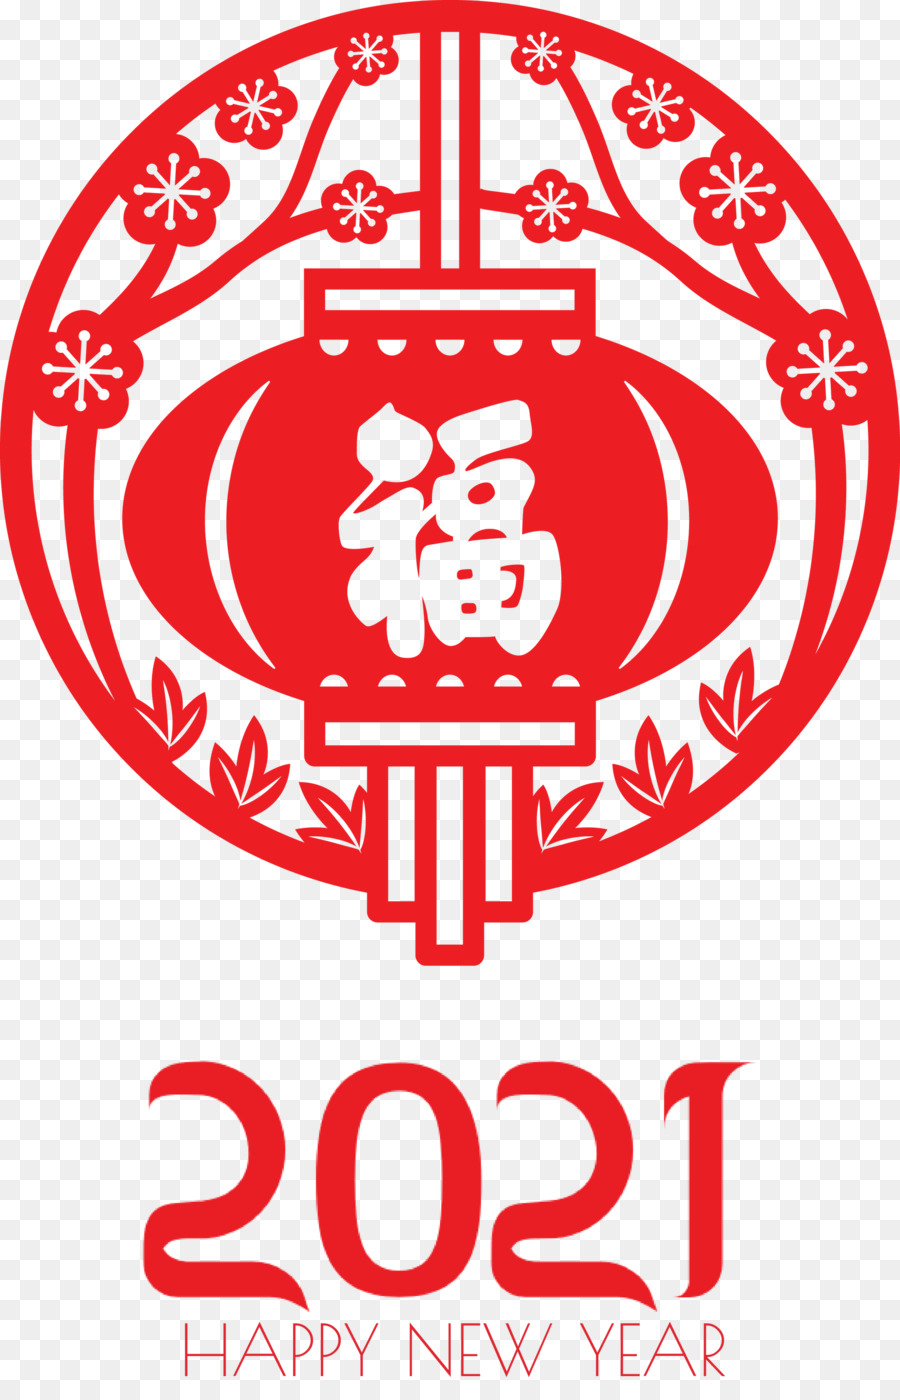 Chúc mừng năm mới Trung Quốc Chúc mừng năm mới 2021 - 